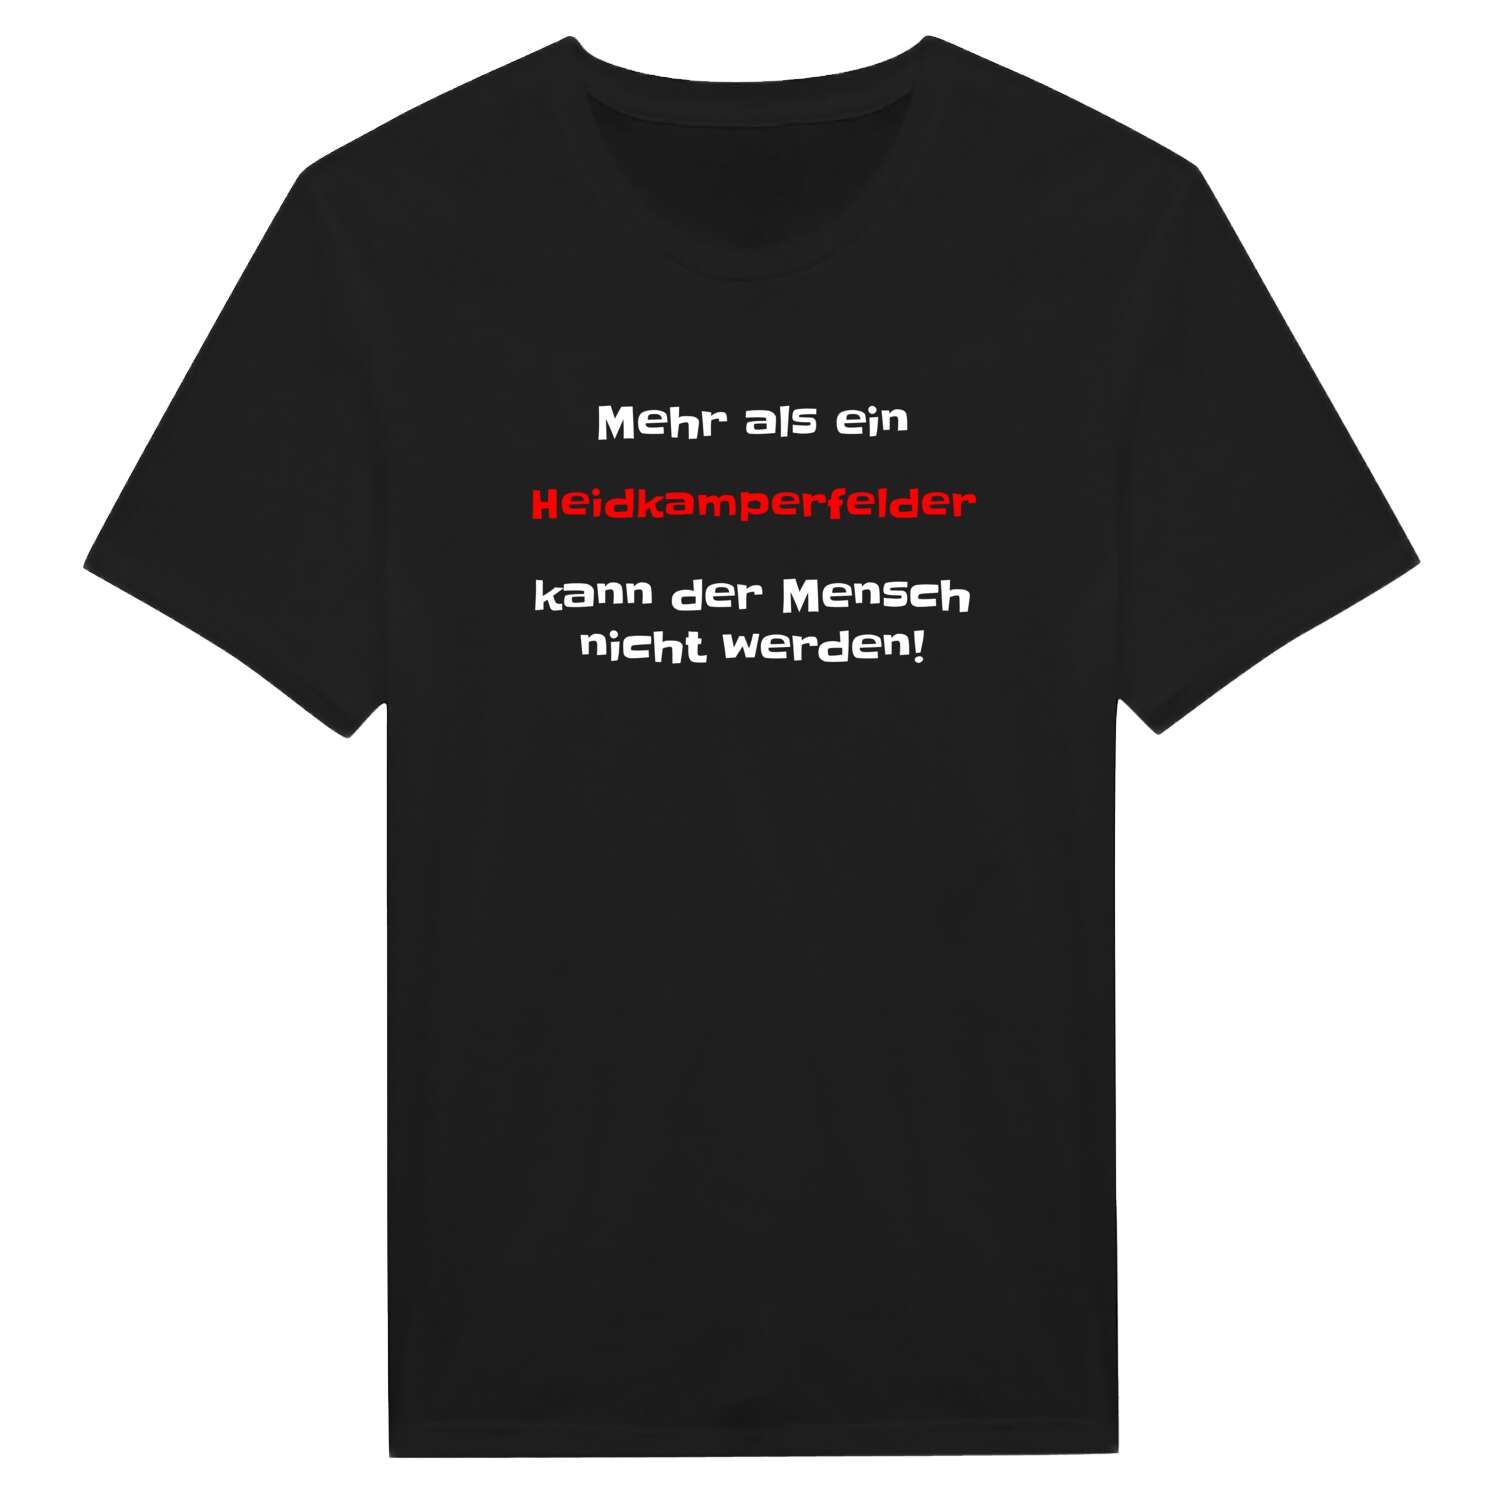 Heidkamperfeld T-Shirt »Mehr als ein«